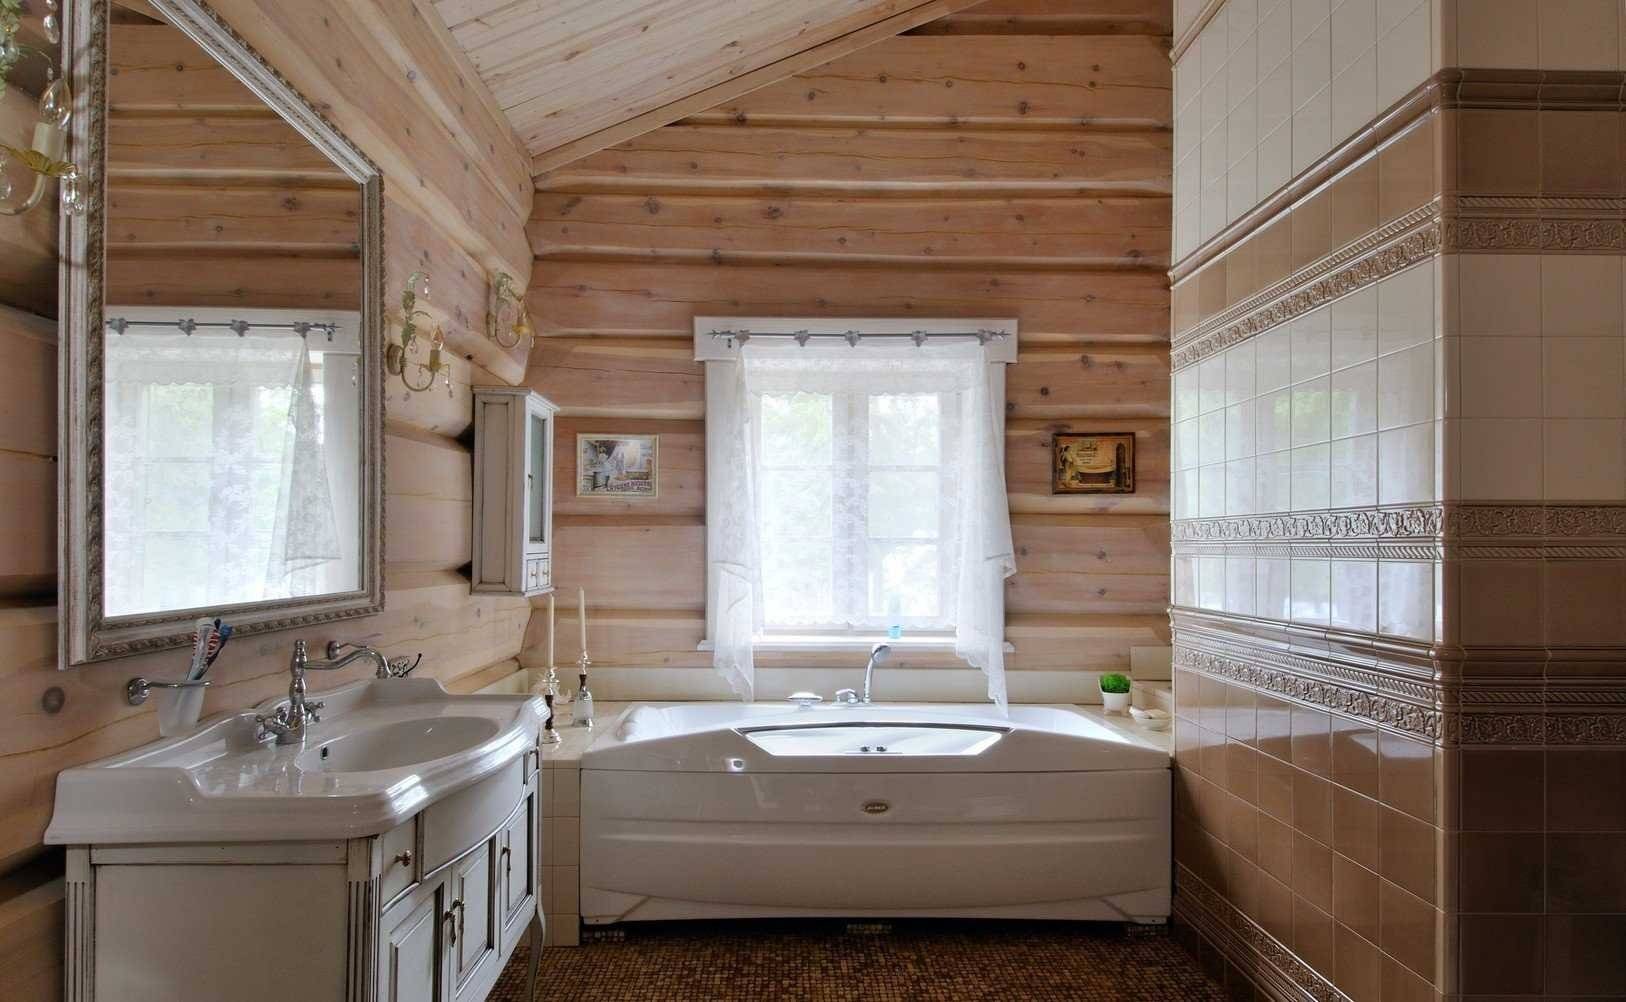 Ванная комната в частном загородном деревянном доме